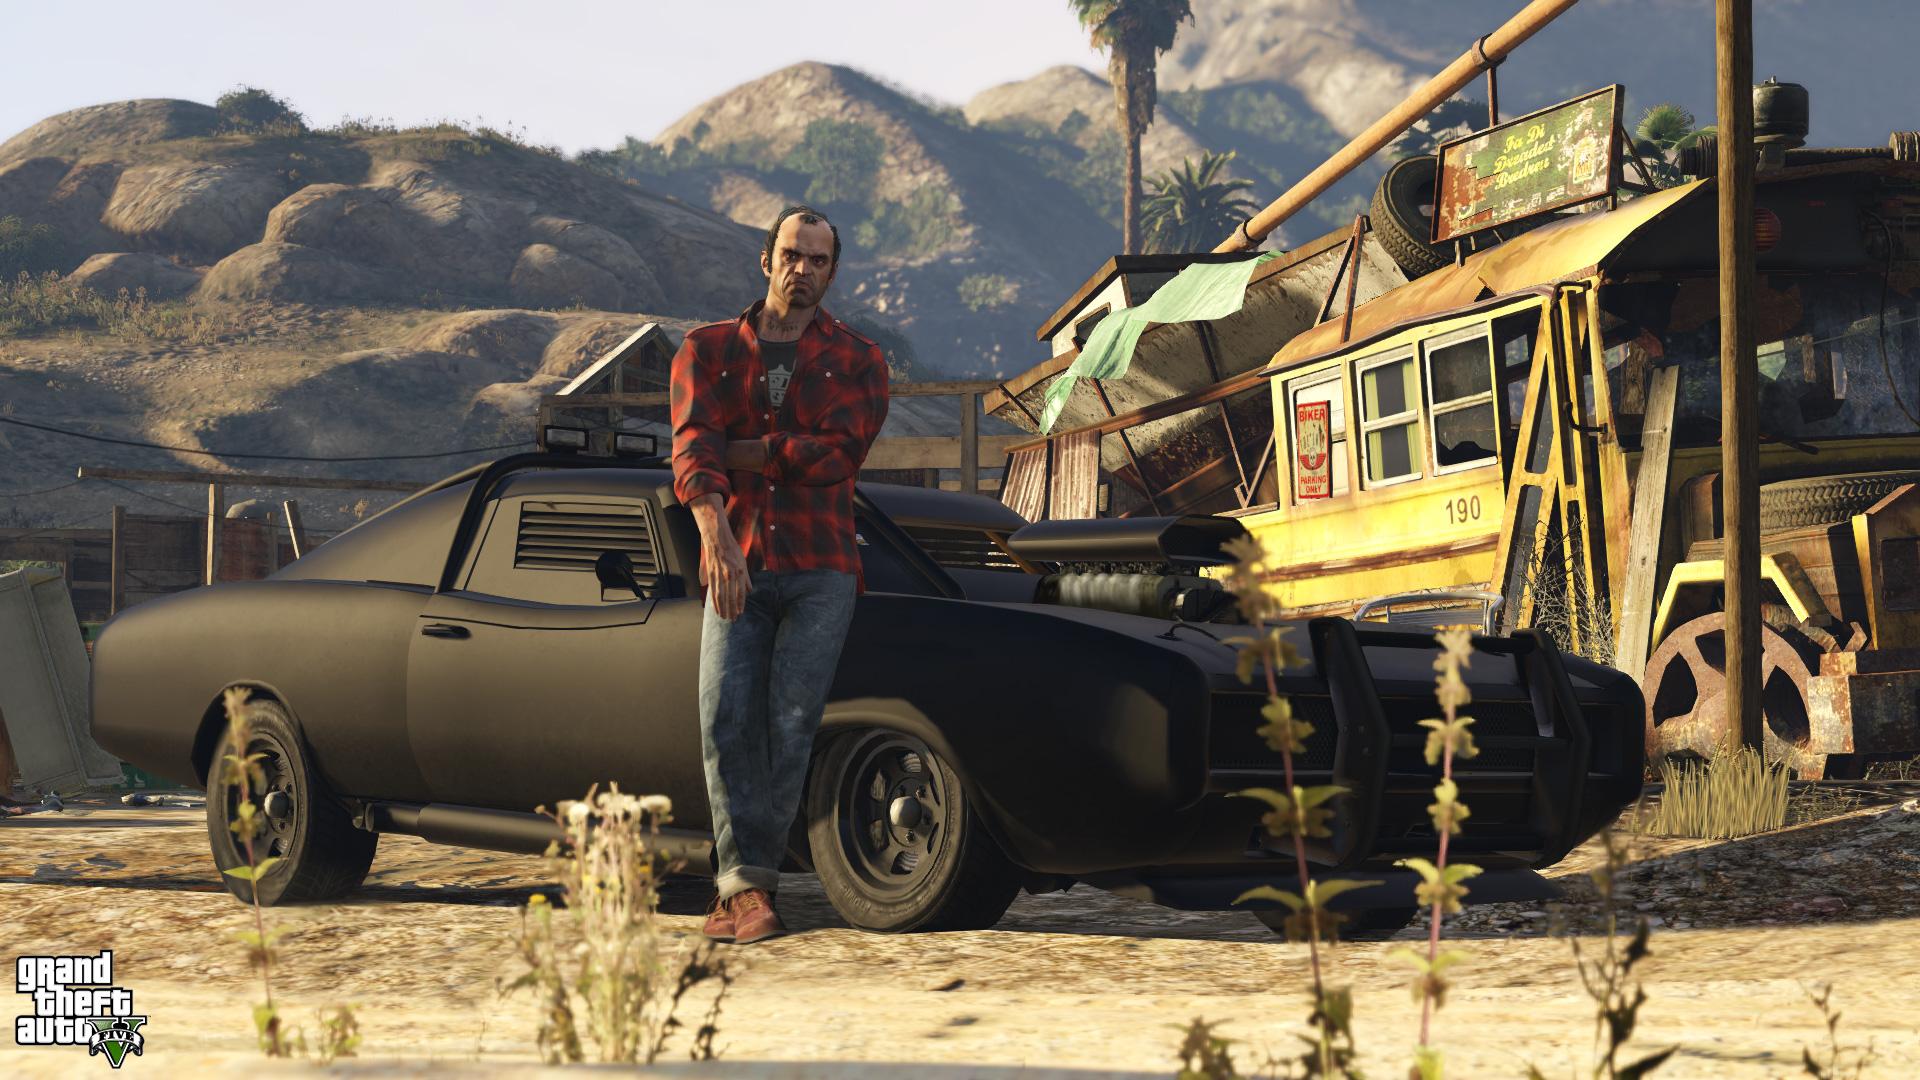 Franquia Grand Theft Auto já superou 220 milhões de unidades vendidas para varejo